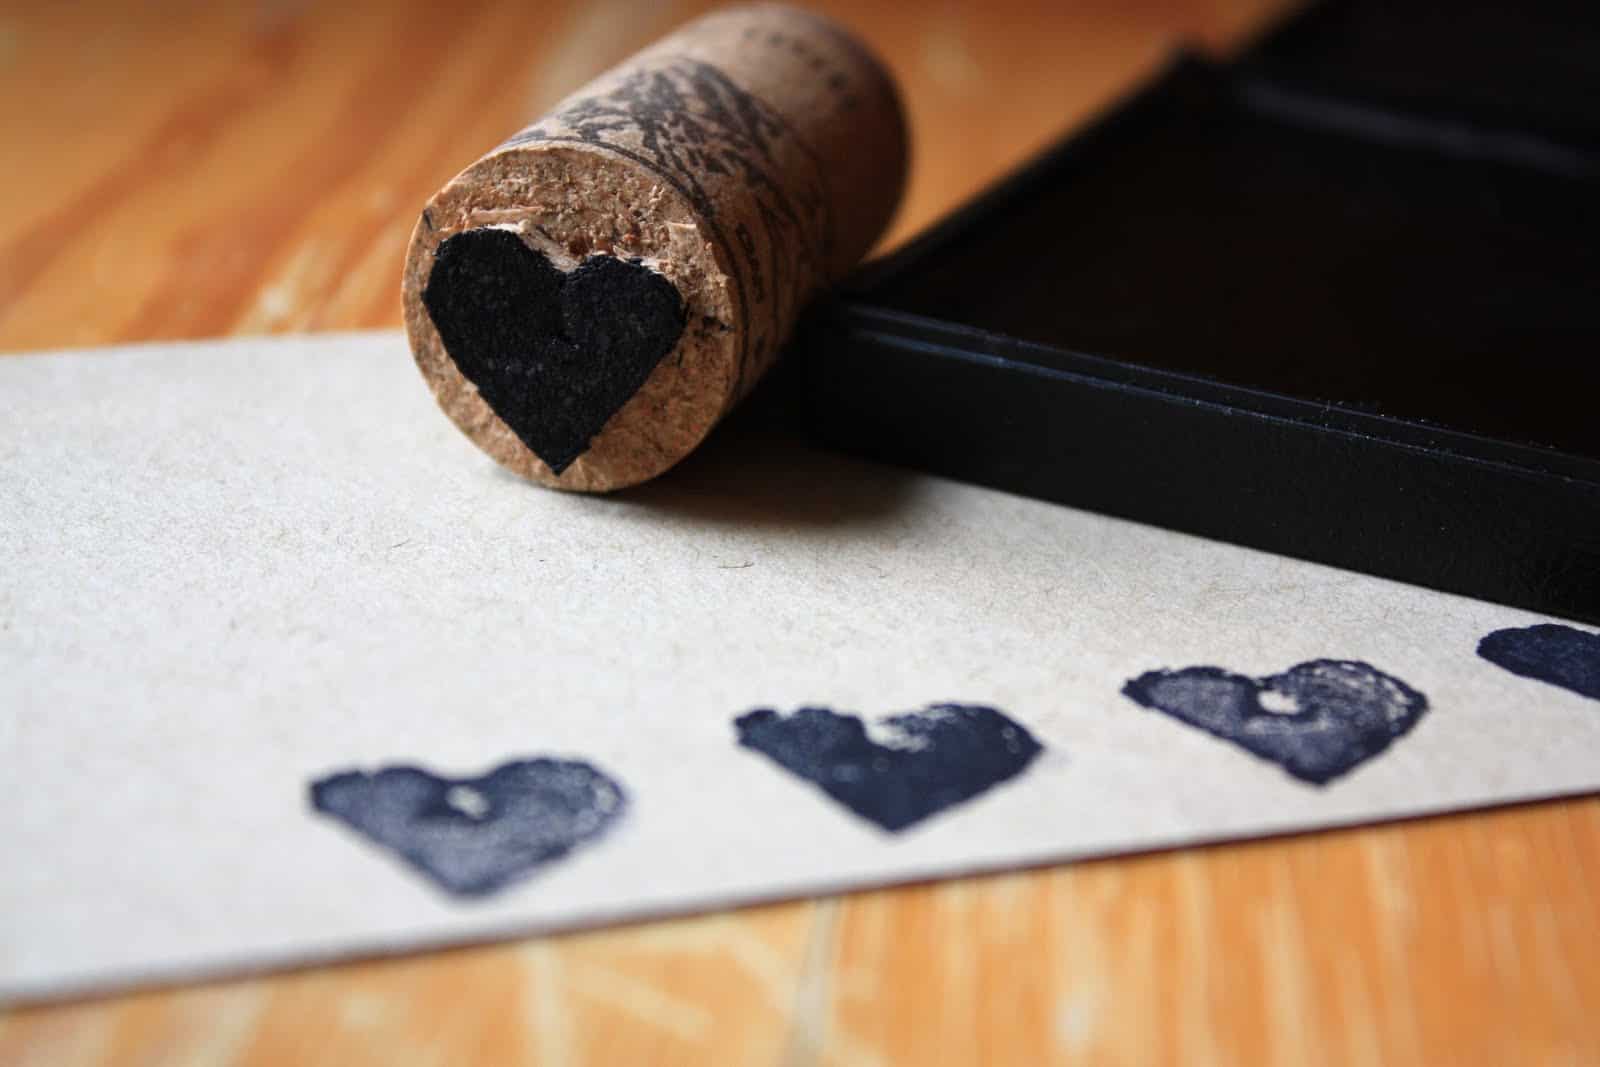 DIY cork stamps